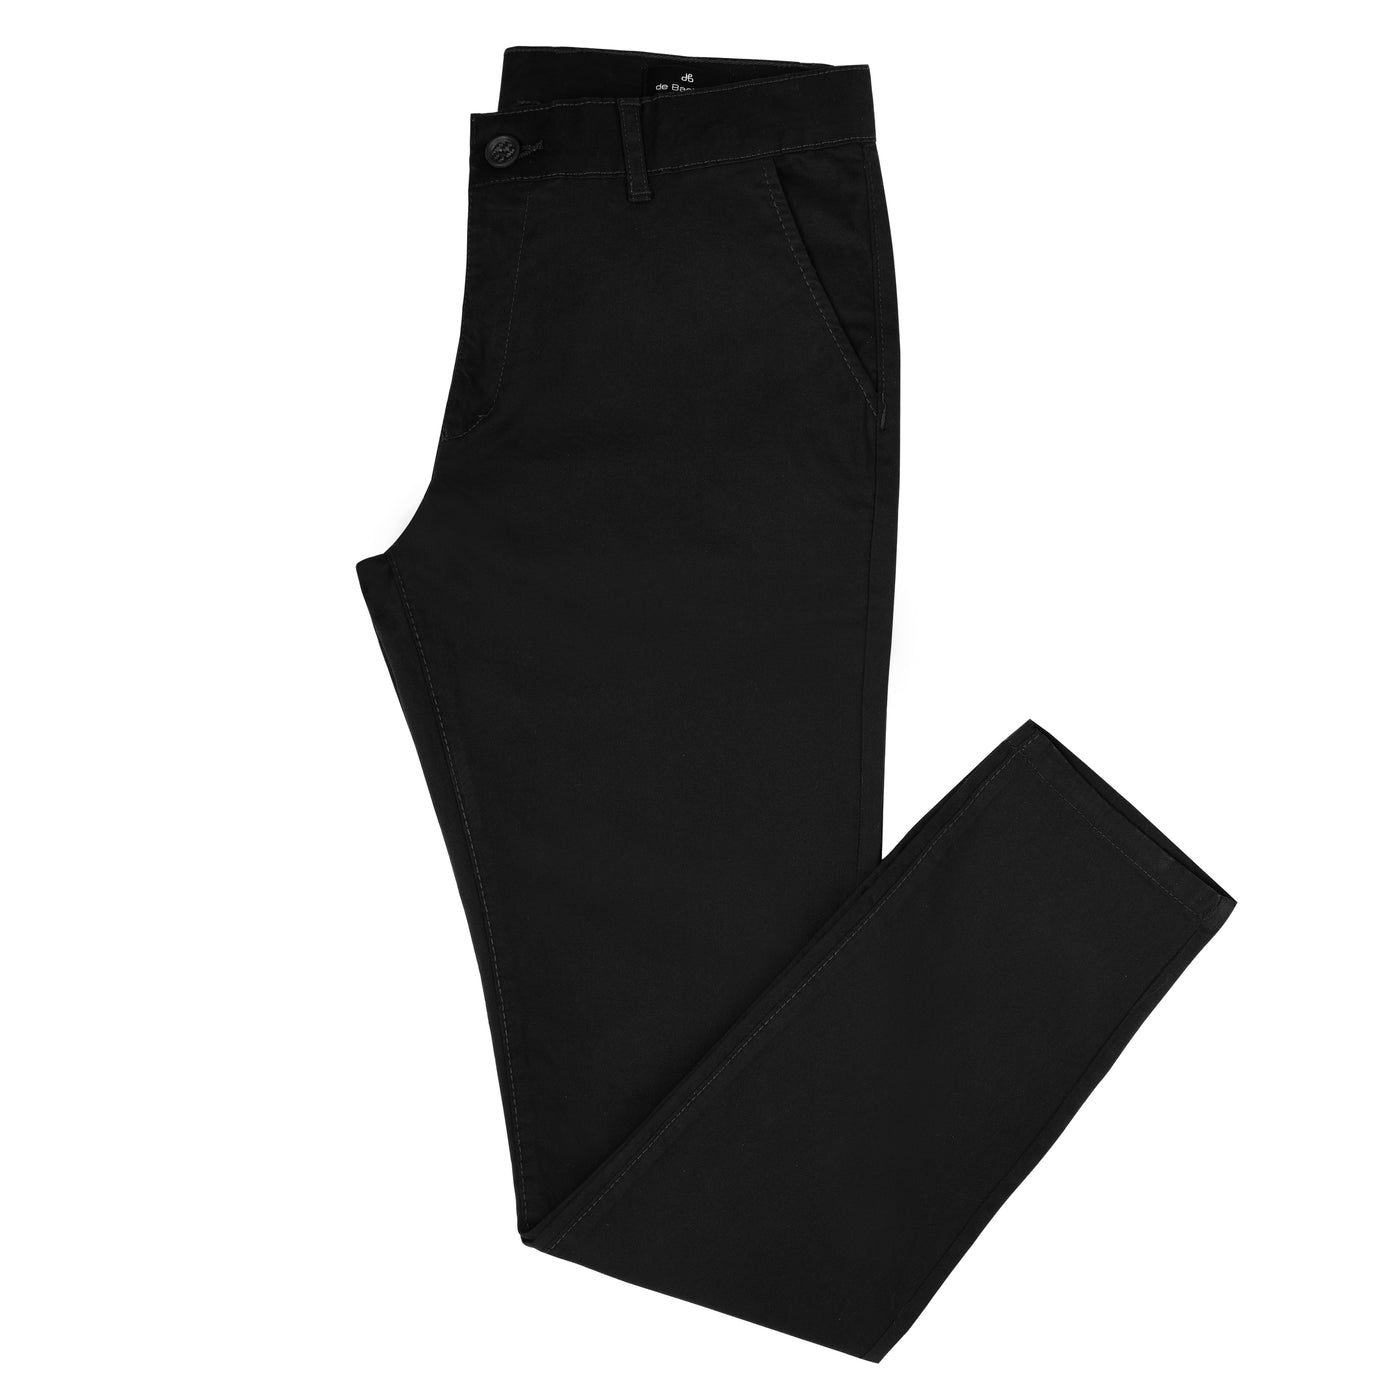 Chino Slim Black Cotton Elastic Pant